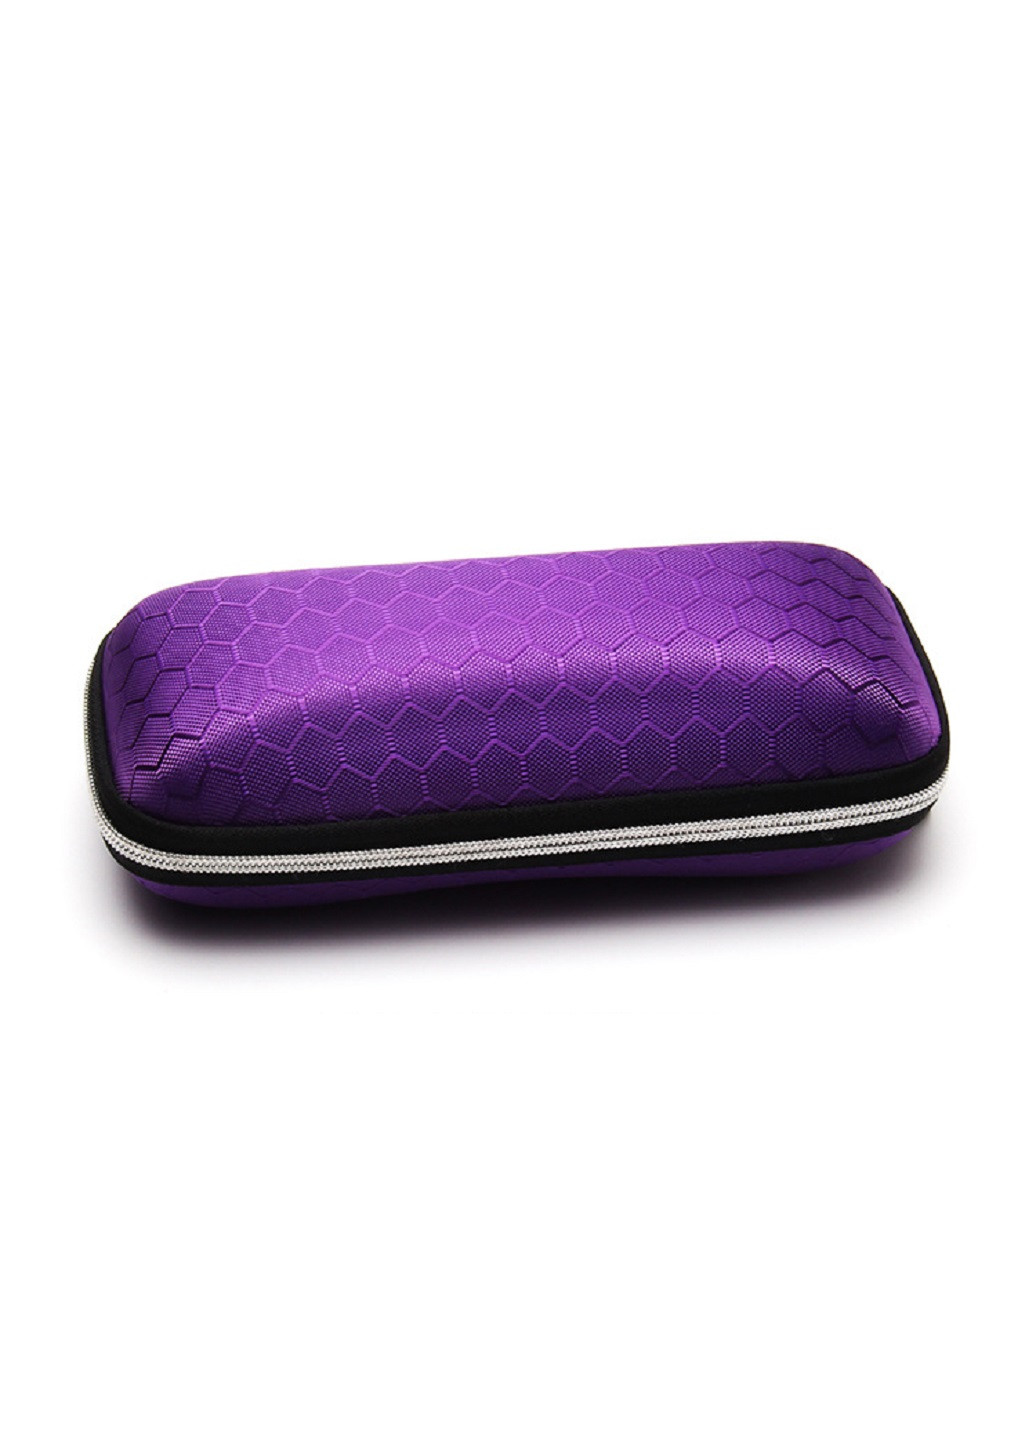 Футляр для очков A&Co. пенал геометрический фиолетовый текстиль